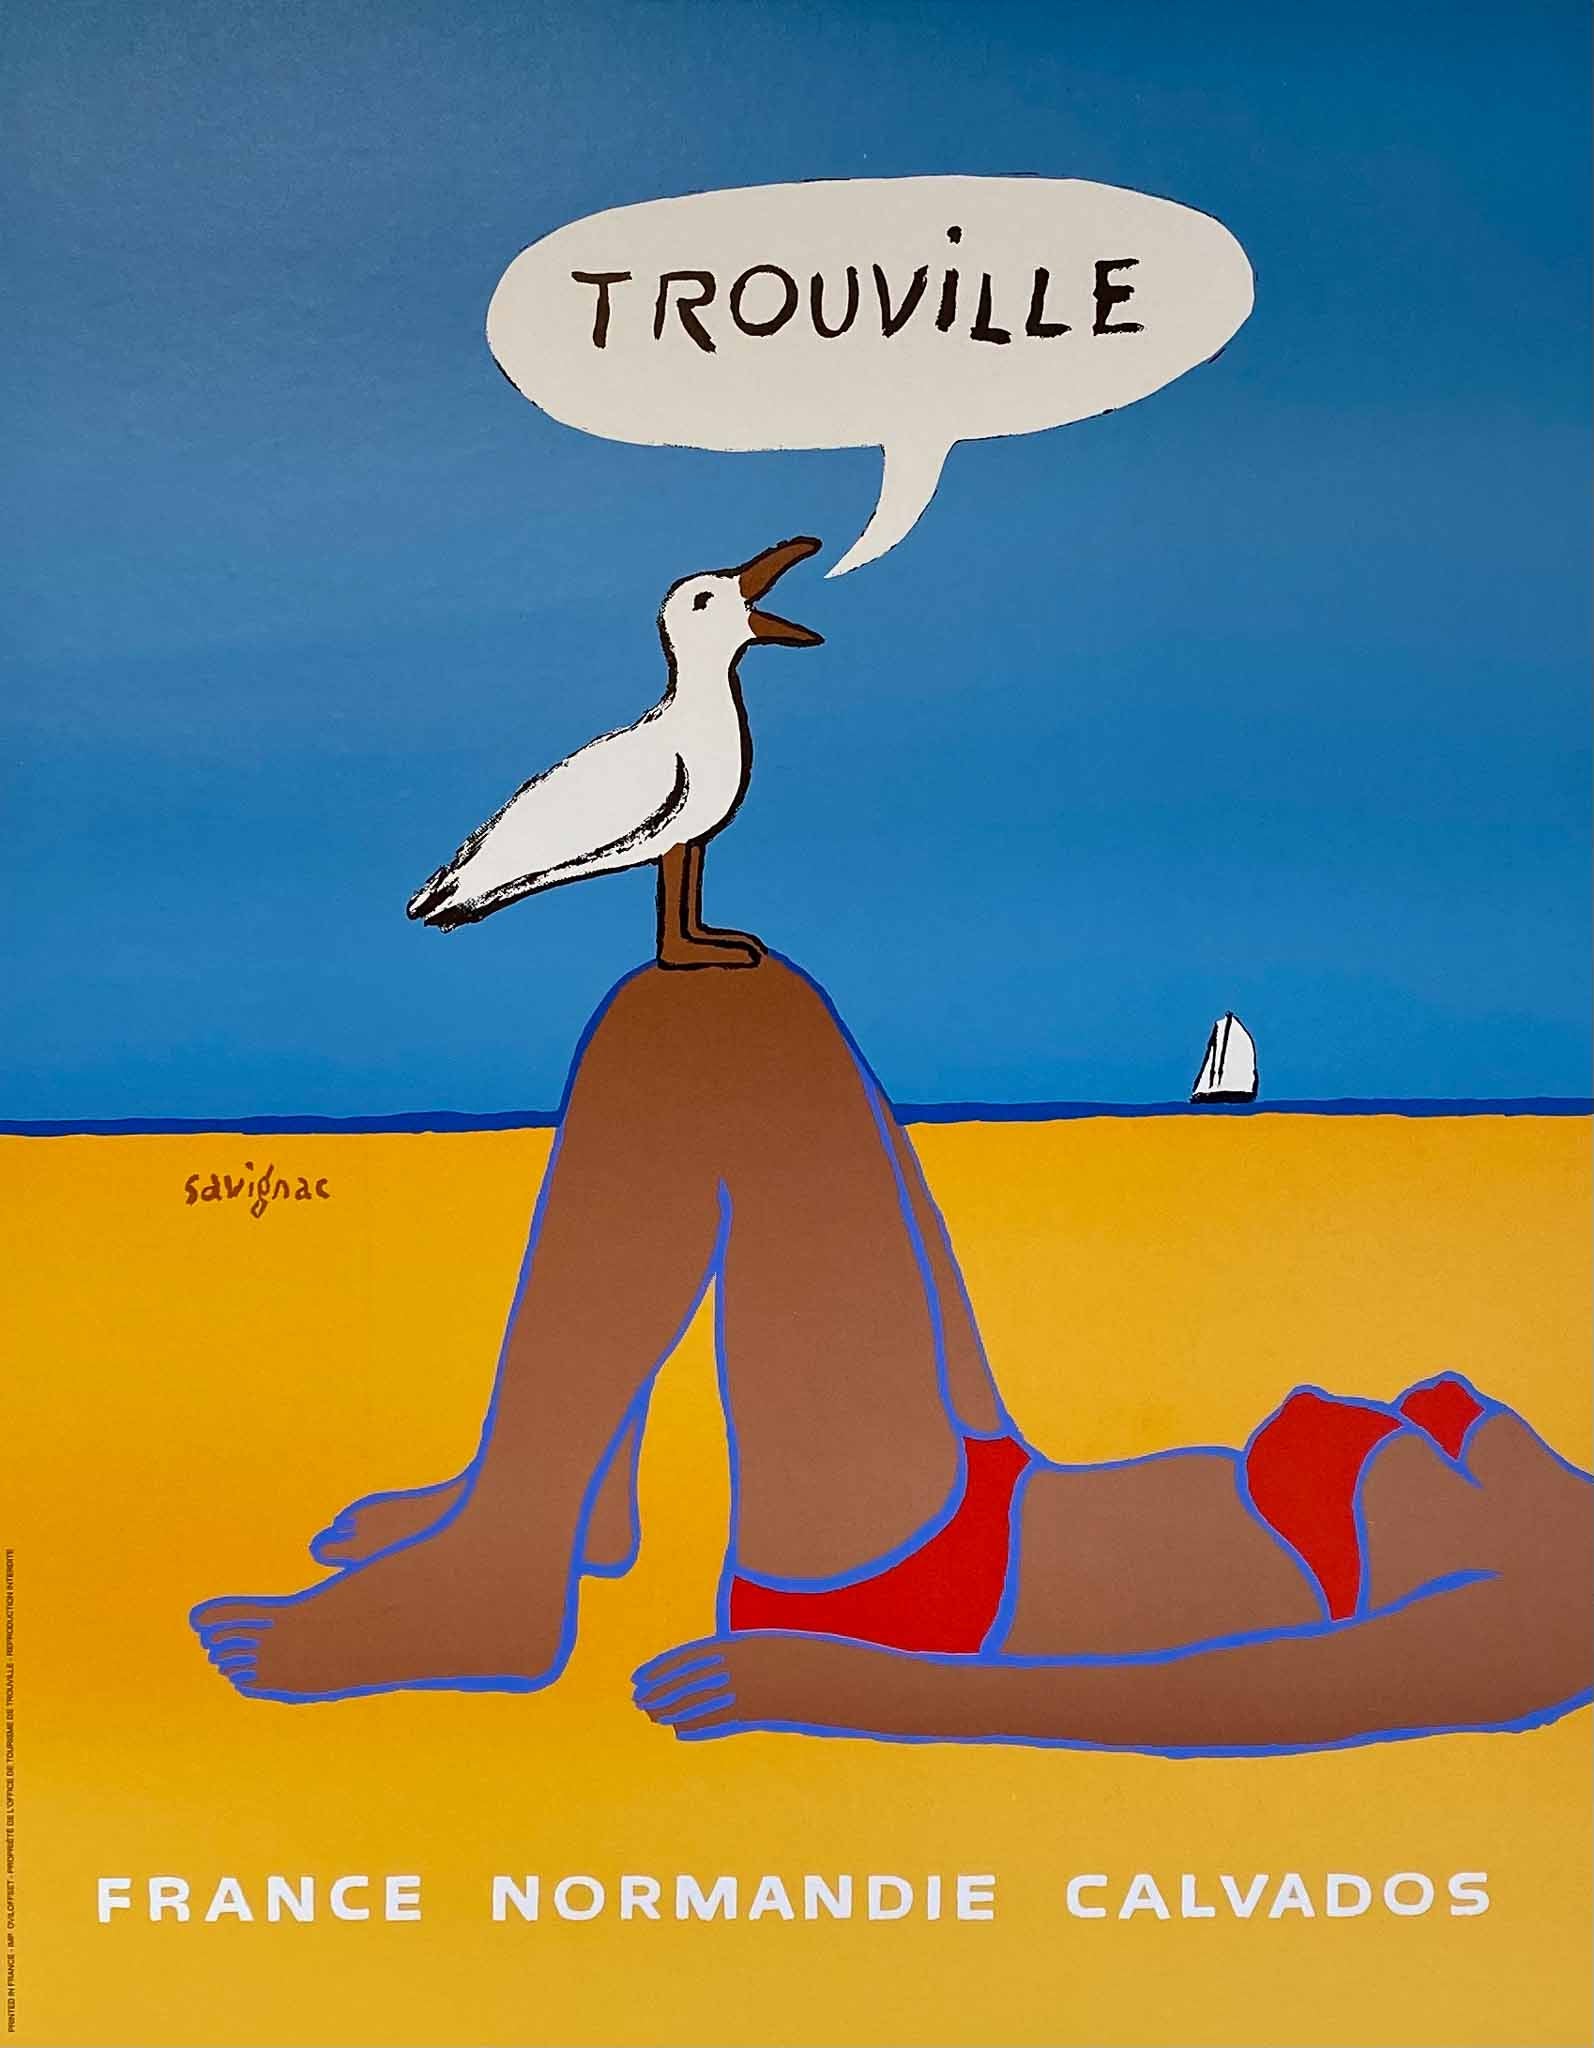 Affiche Vintage Trouville - France Normandie calvados Par Raymond Savignac, 1987          Superbe affiche très décorative, du célèbre affichiste Français, Raymond Savignac.  Affiche réalisée pour promouvoir la ville de Trouville